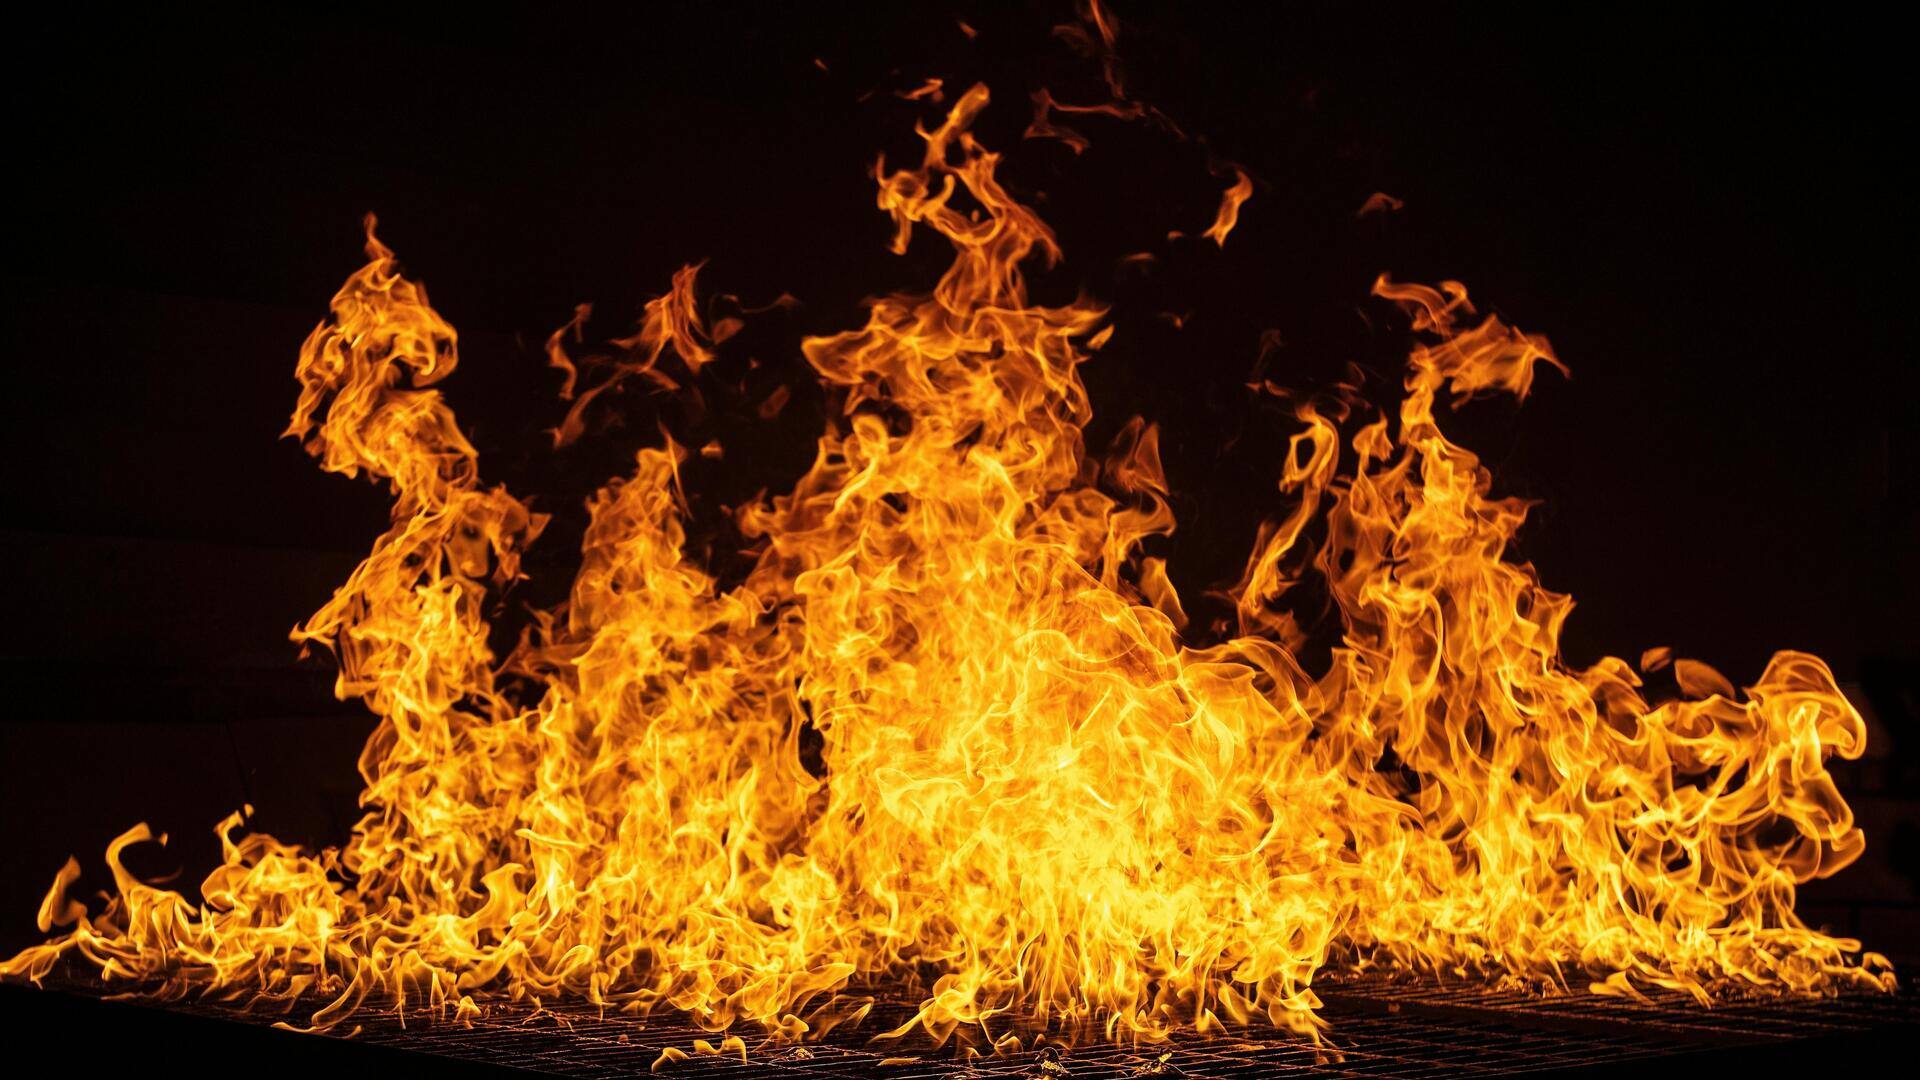 राजस्थान: फैक्ट्री में केमिकल खाली करते टैंकर में भीषण आग लगी, गेहूं की फसल जलकर खाक